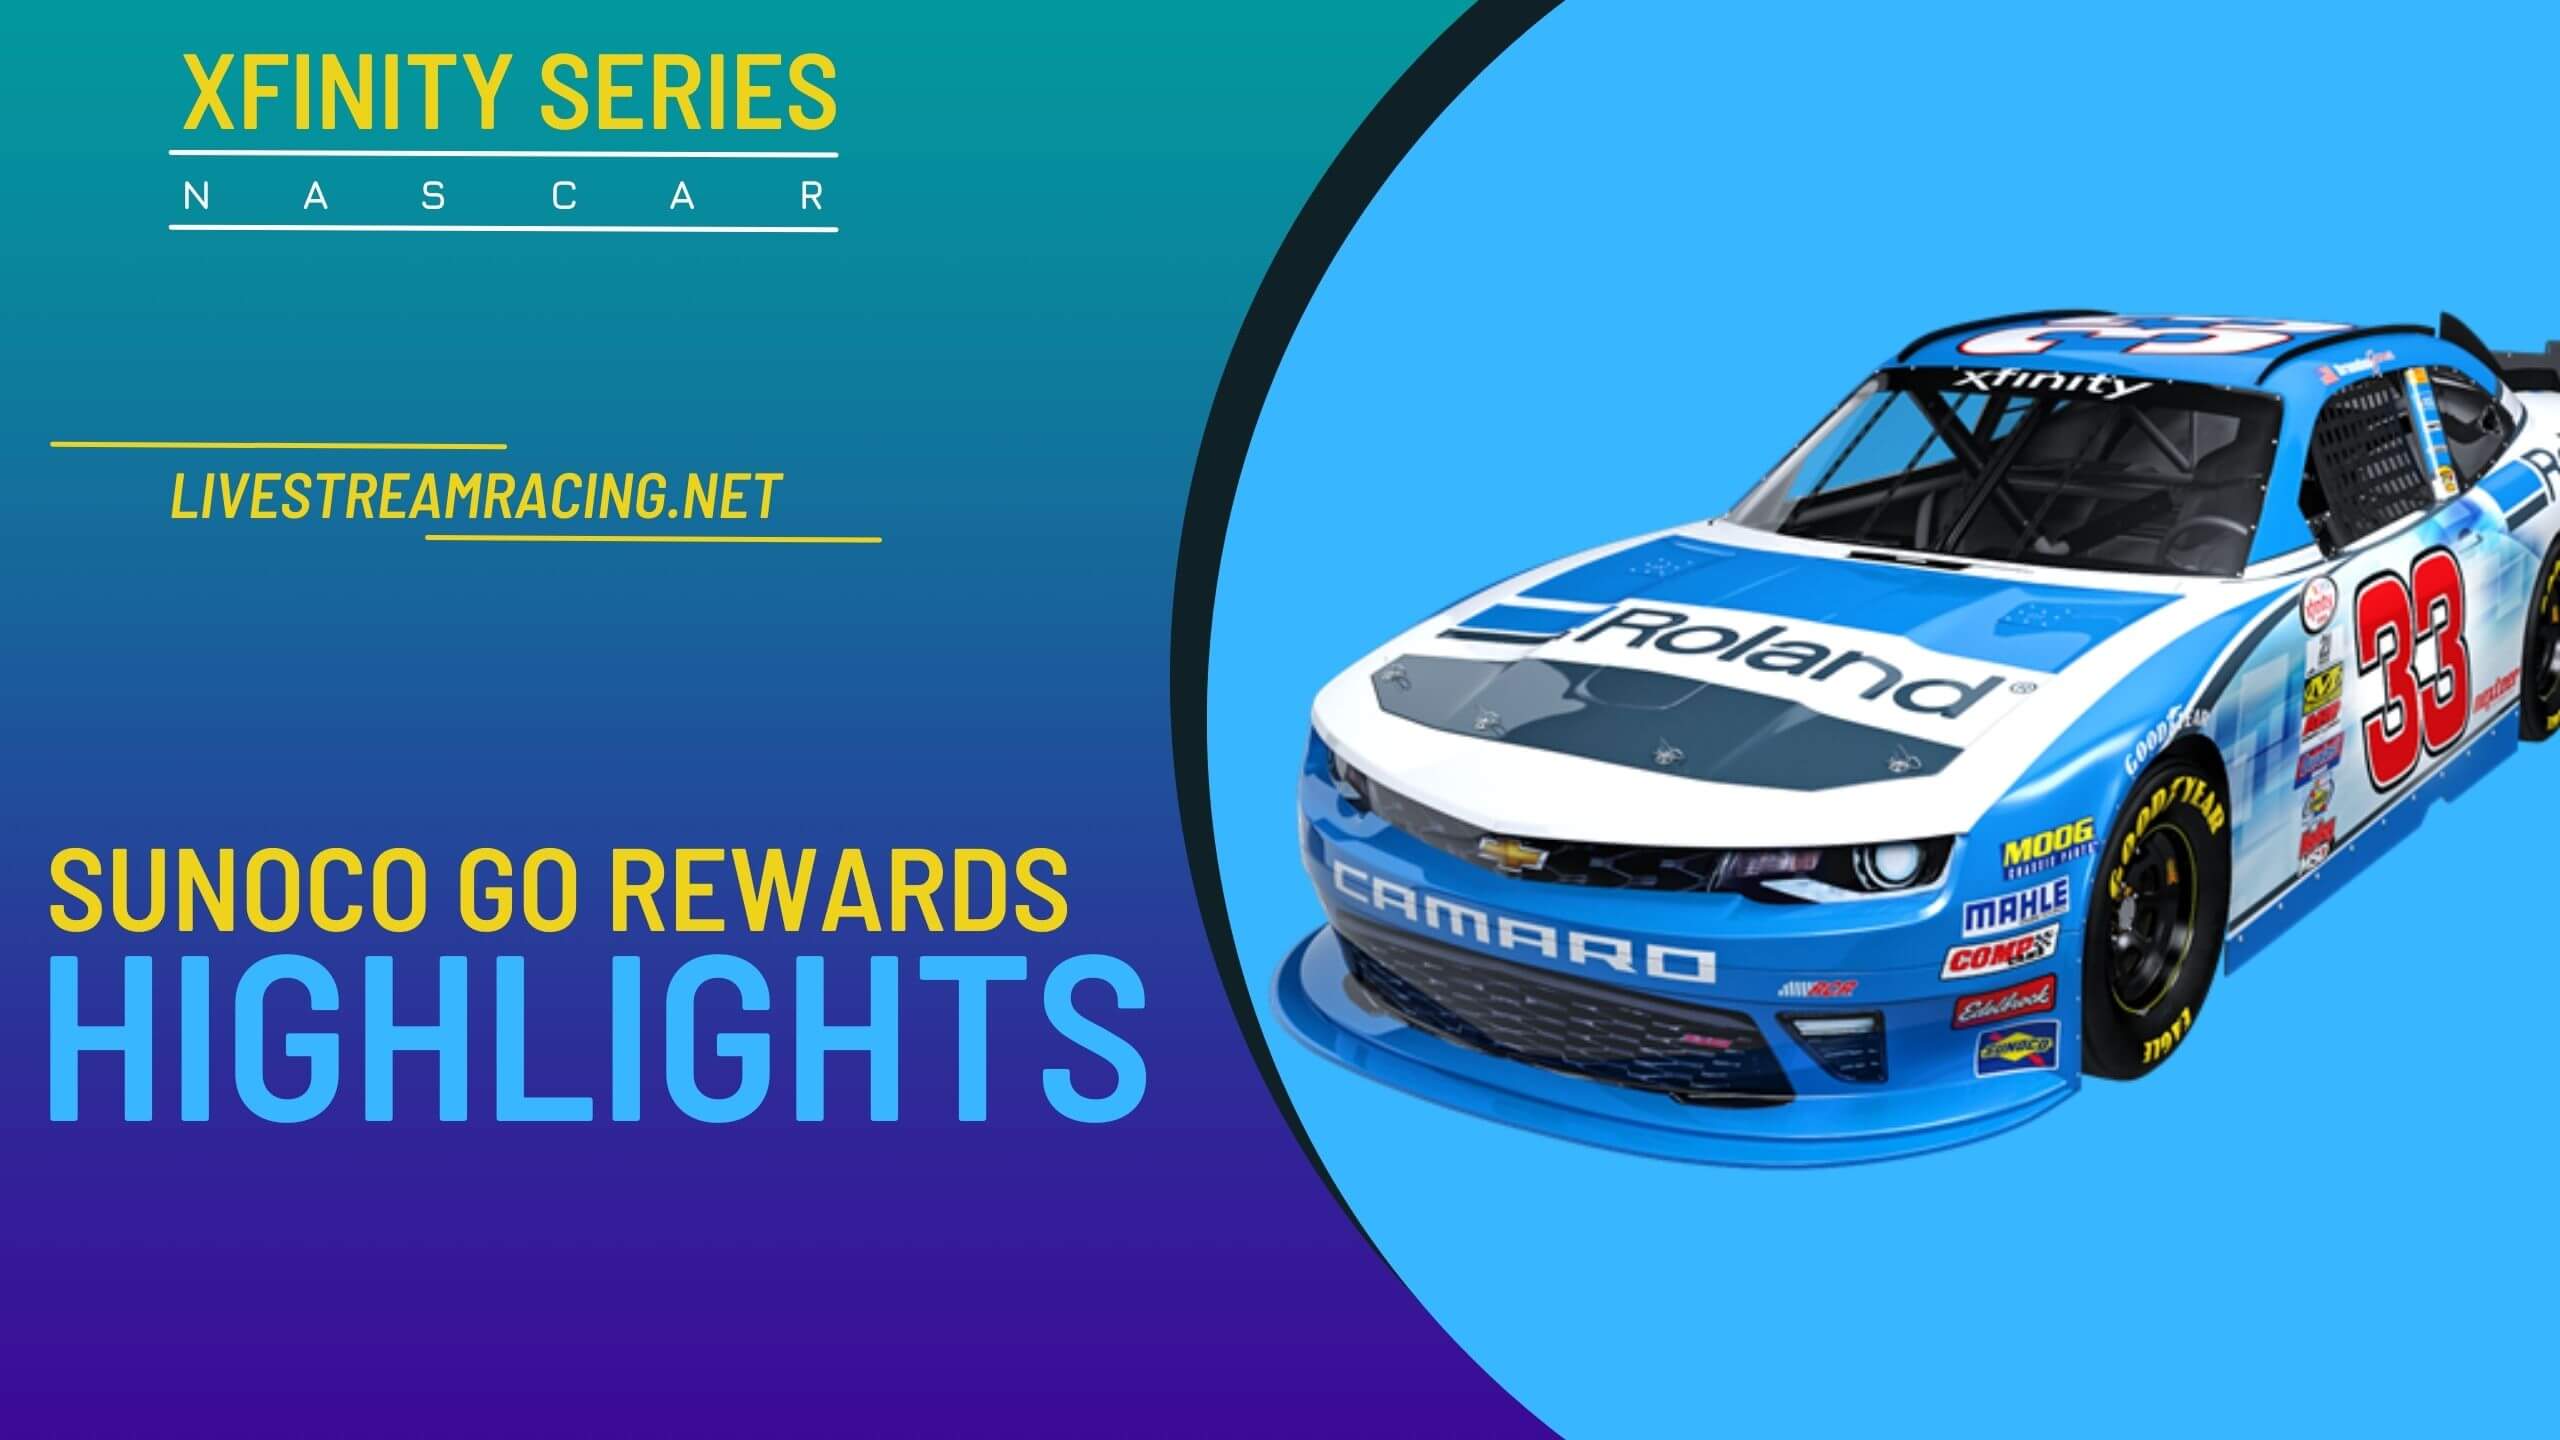 Sunoco Go Rewards 200 Nascar Highlights 2022 Xfinity Series